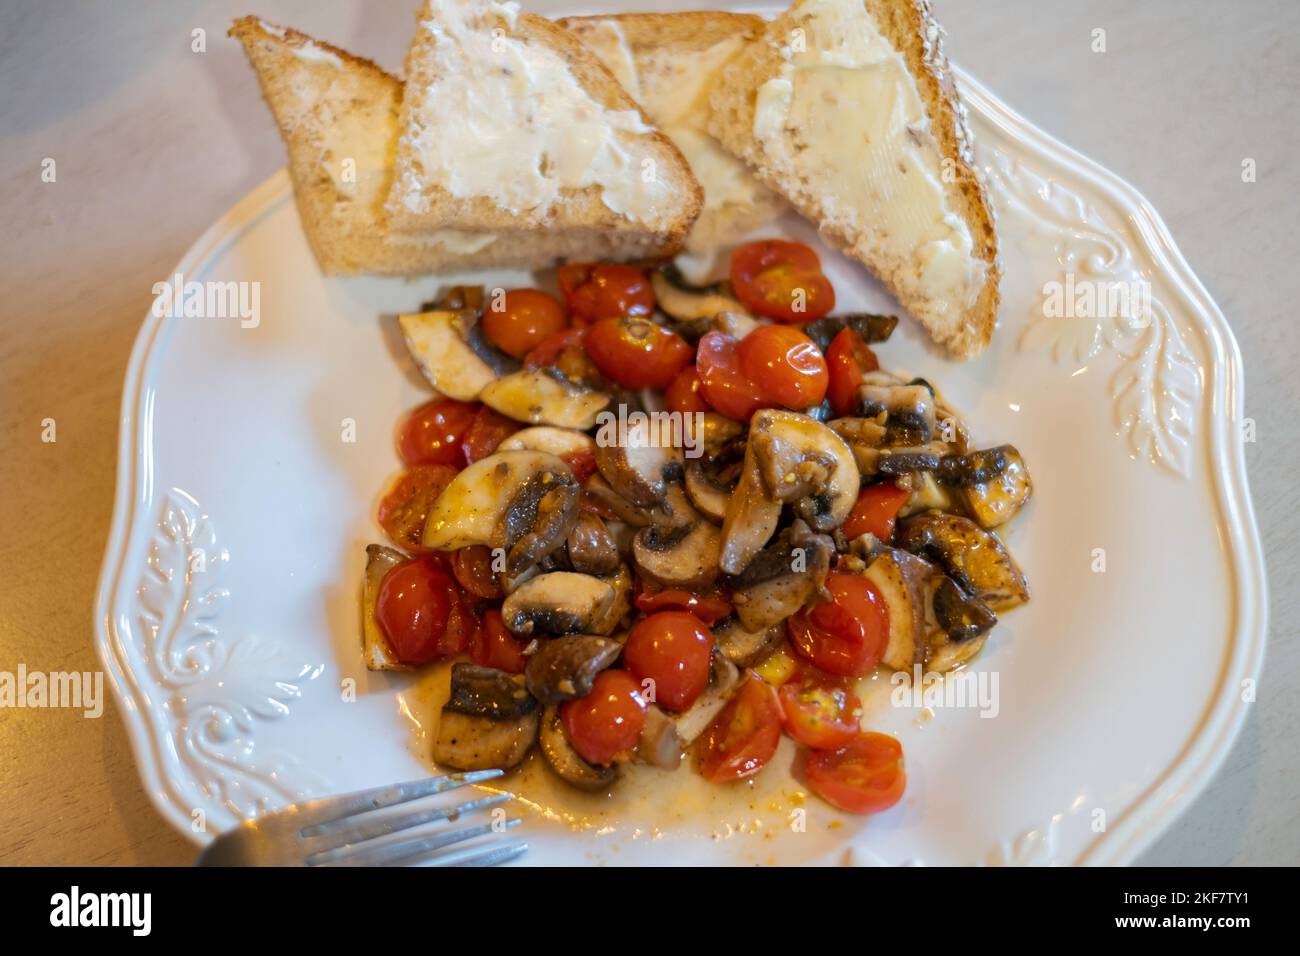 Un dîner de légumes sains composé de champignons, de tomates cerises et d'ail sautés ou sautés, servi sur une assiette blanche avec du pain et du beurre. Banque D'Images